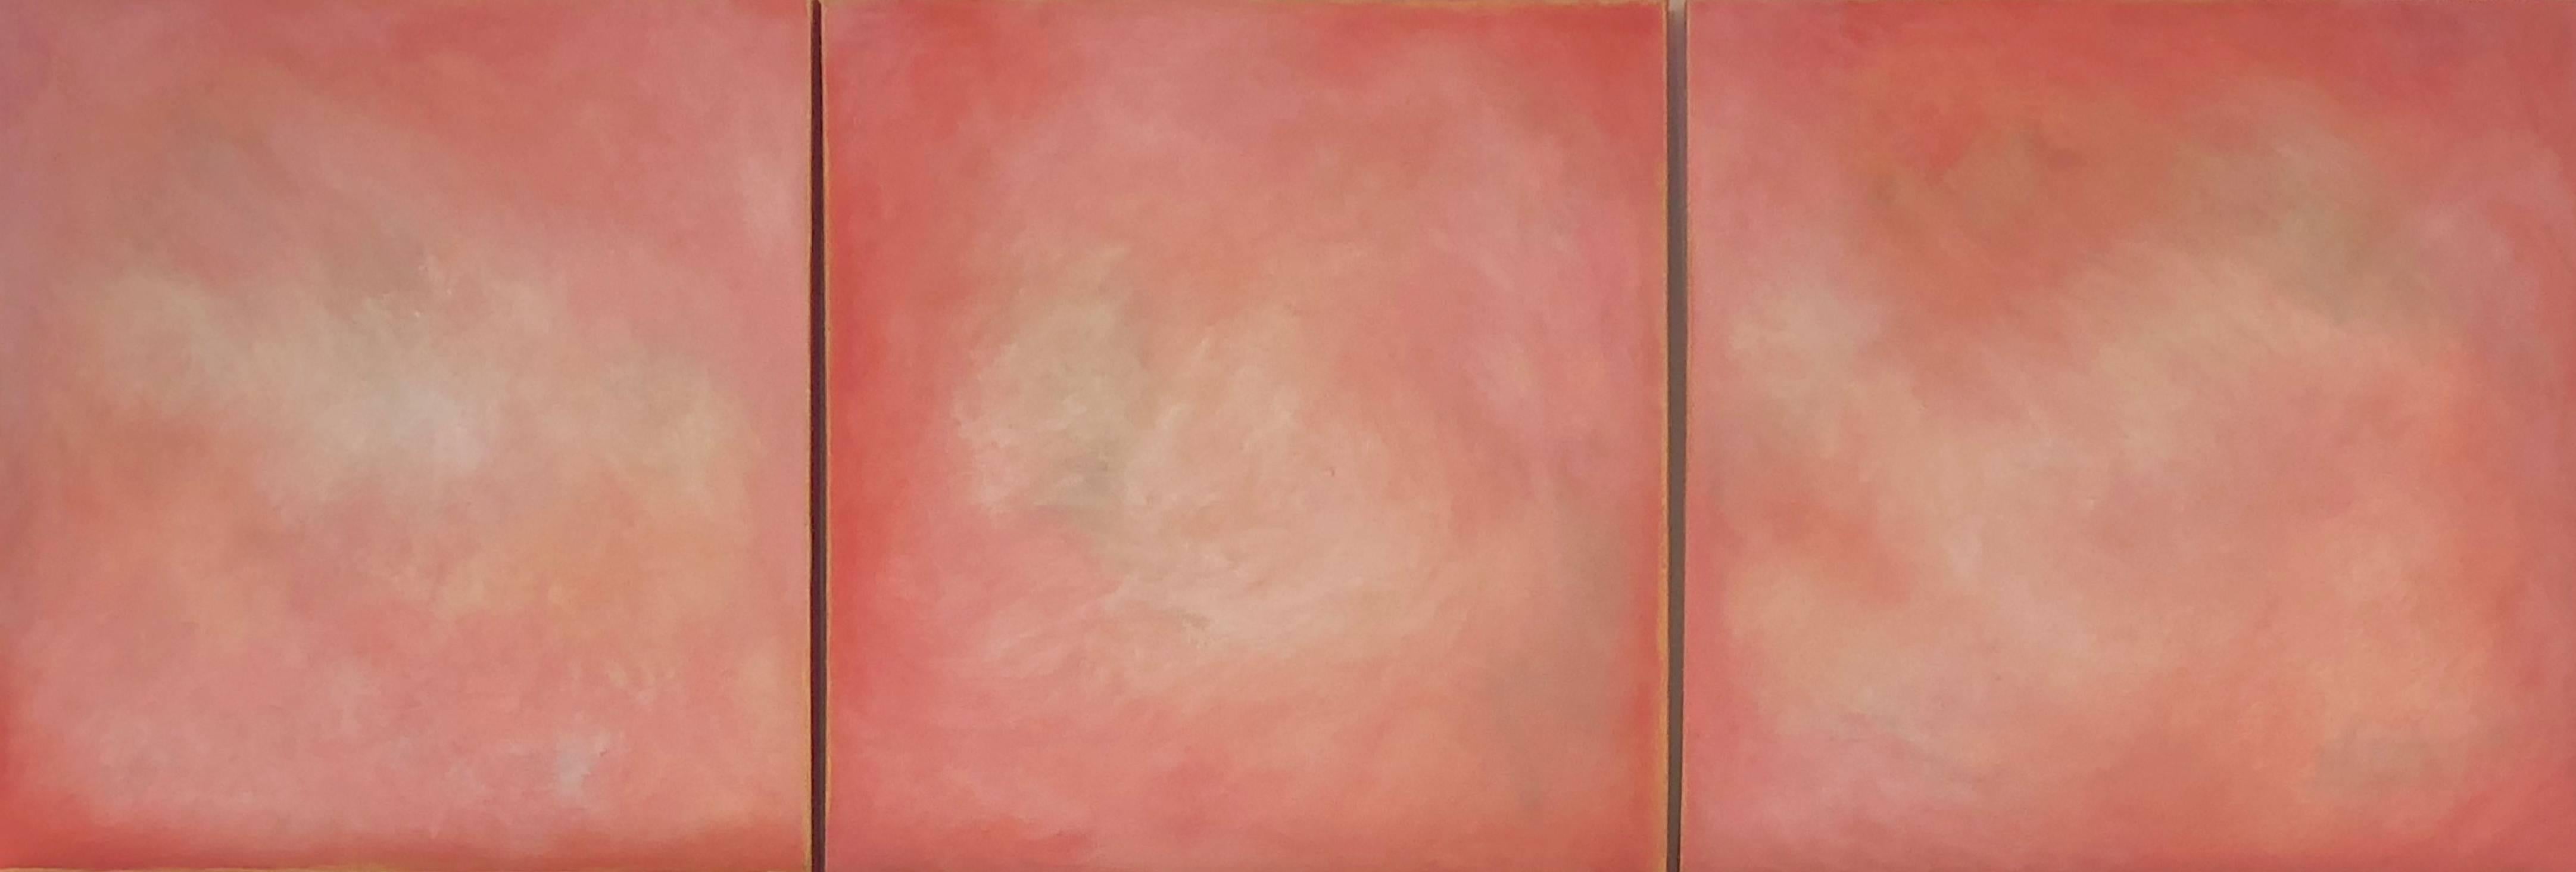 Julie Hedrick Abstract Painting - Awakening